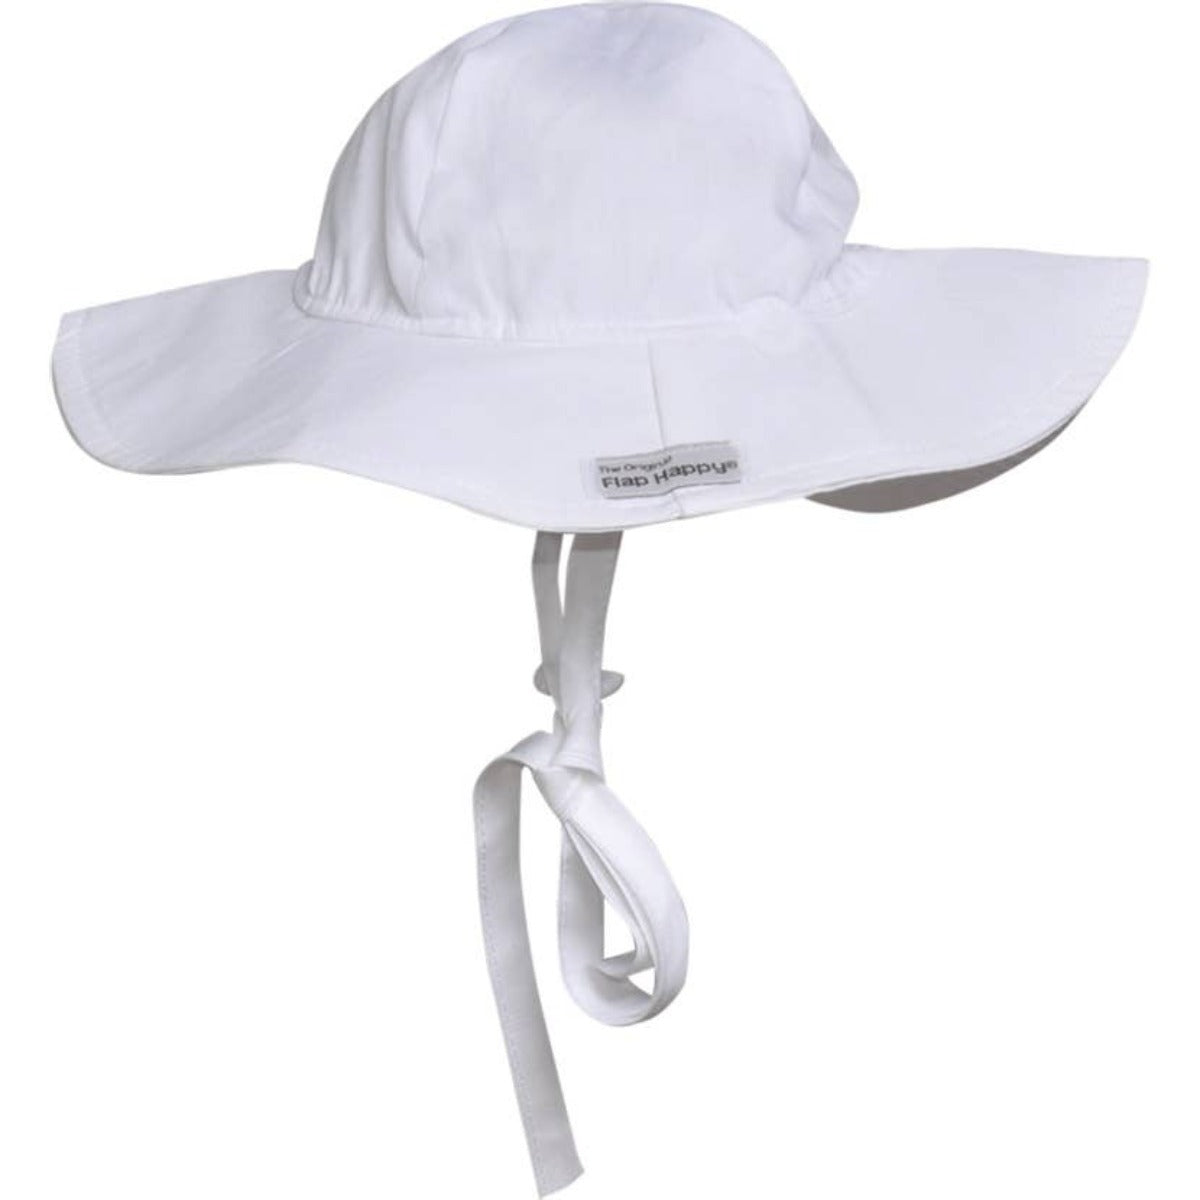 Kid's White Floppy Sun Hat